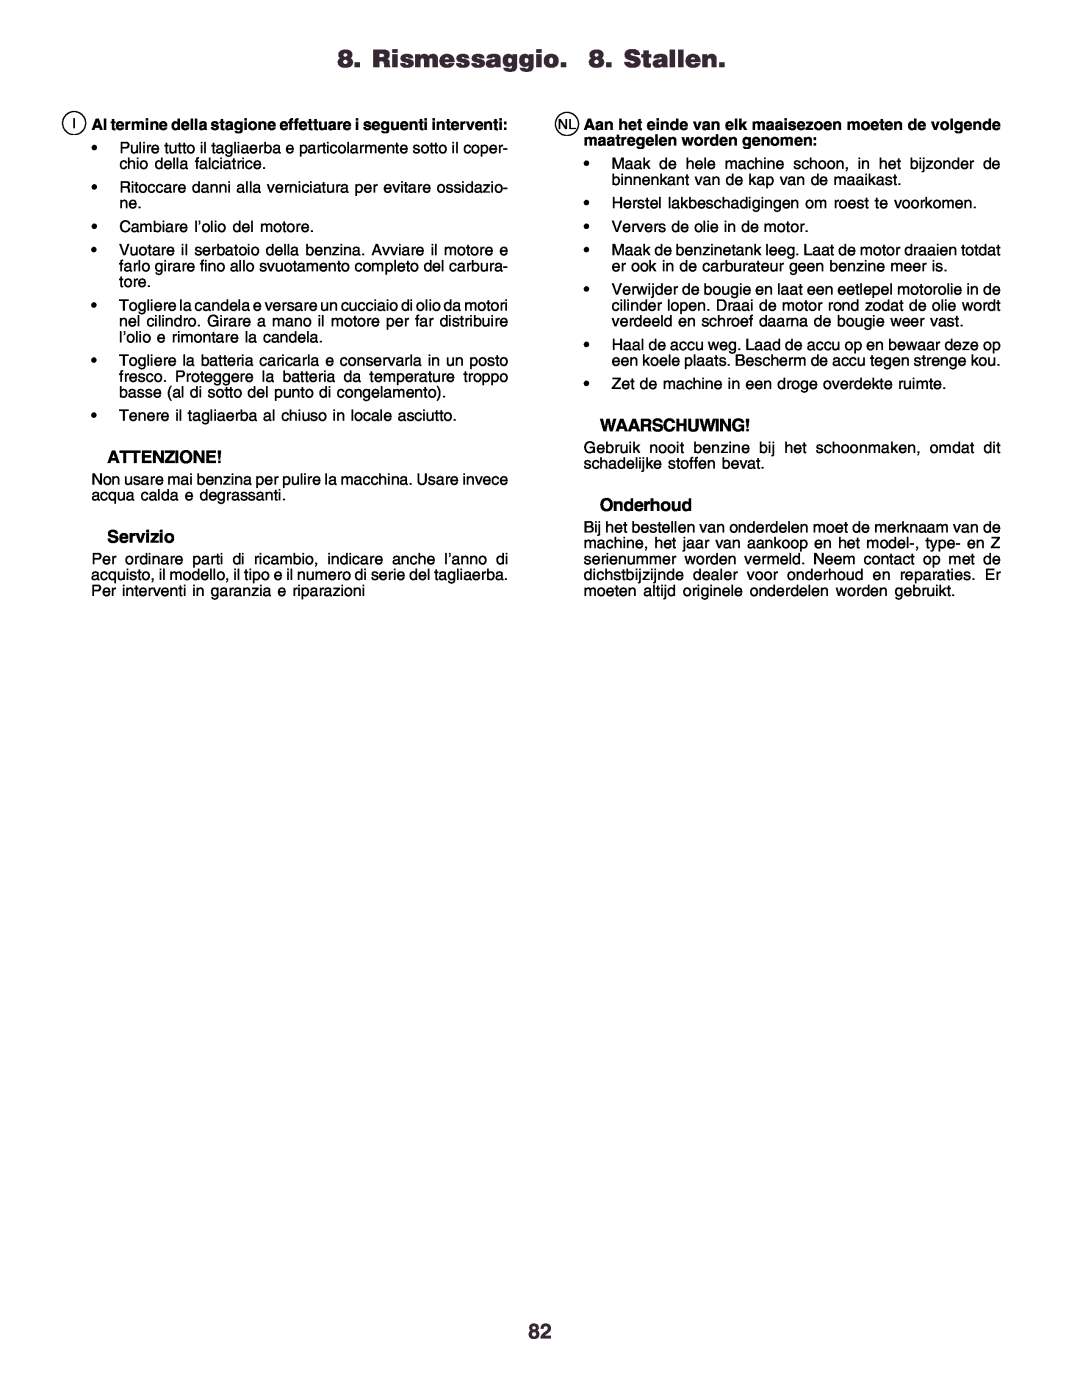 Husqvarna CT160 instruction manual Rismessaggio. 8. Stallen, Attenzione, Servizio, Waarschuwing, Onderhoud 